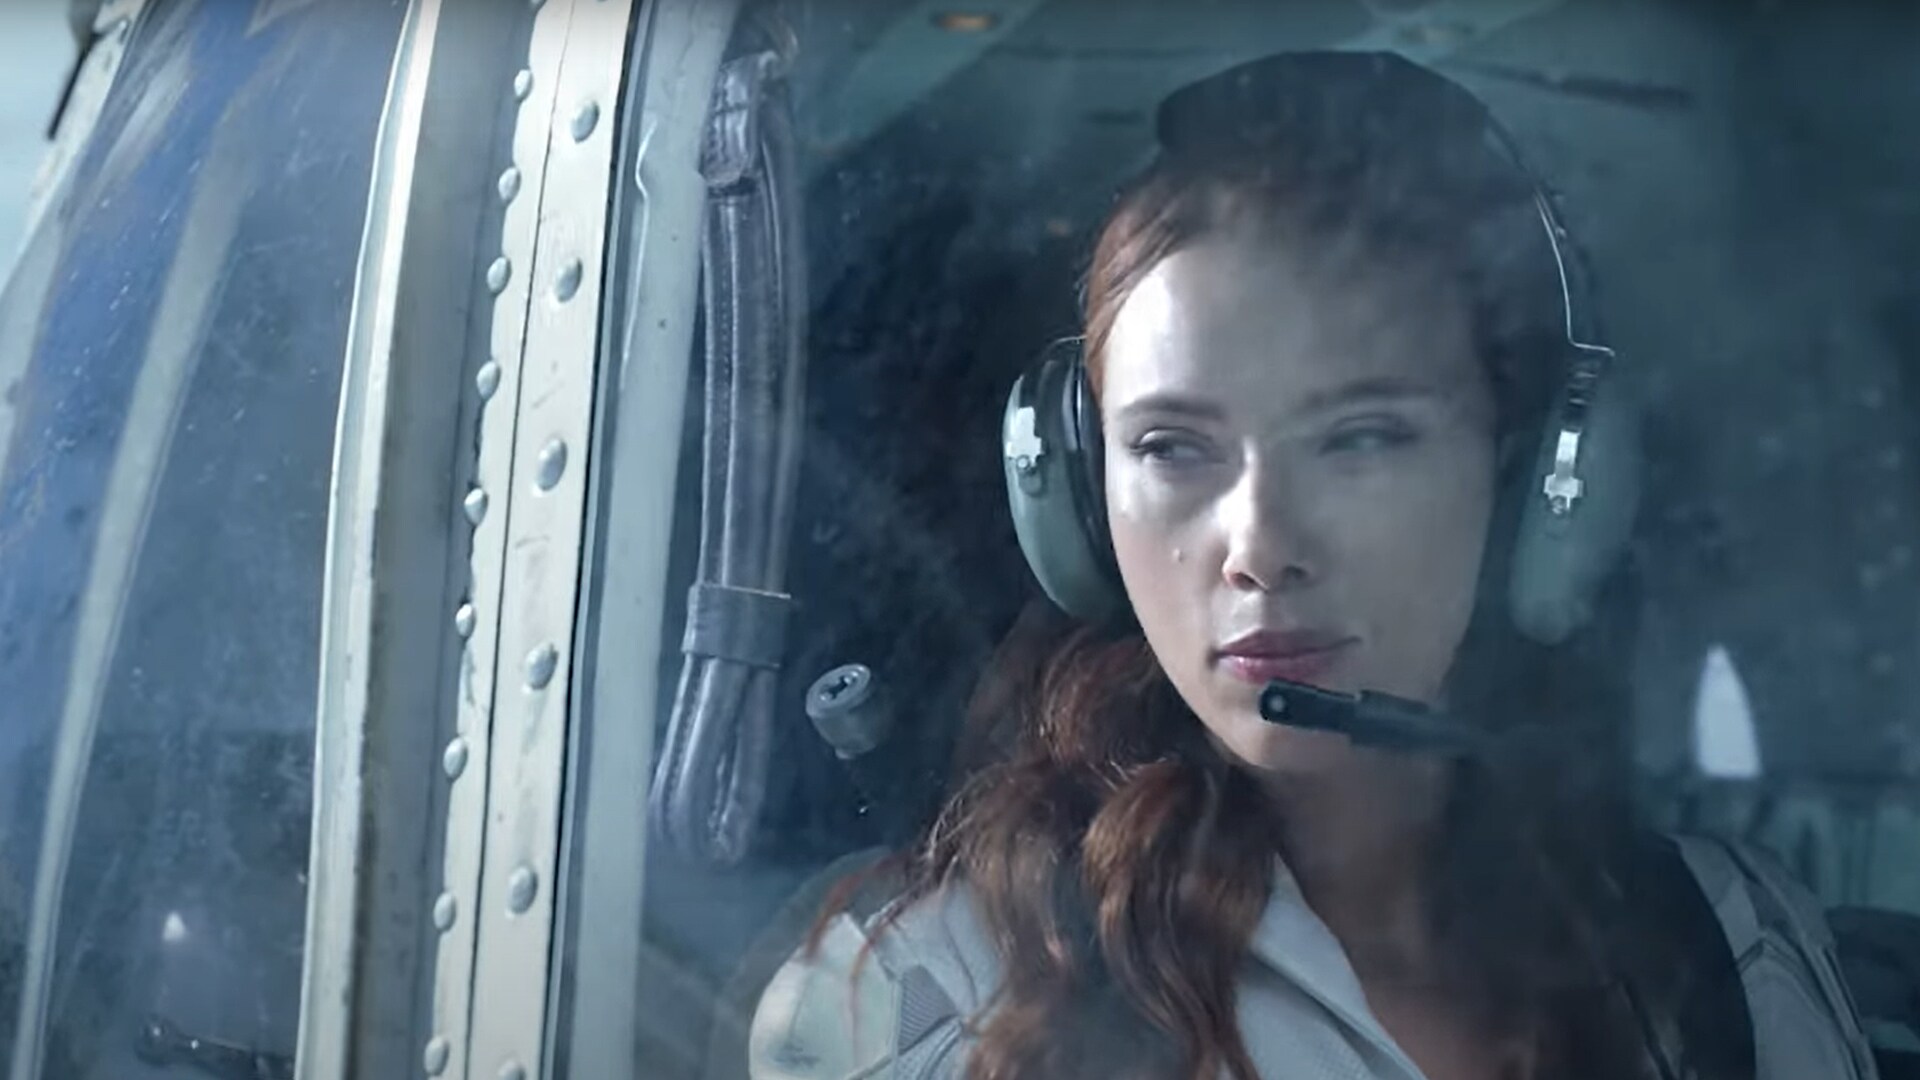 Scarlett Johansson as Black Widow in a helicopter